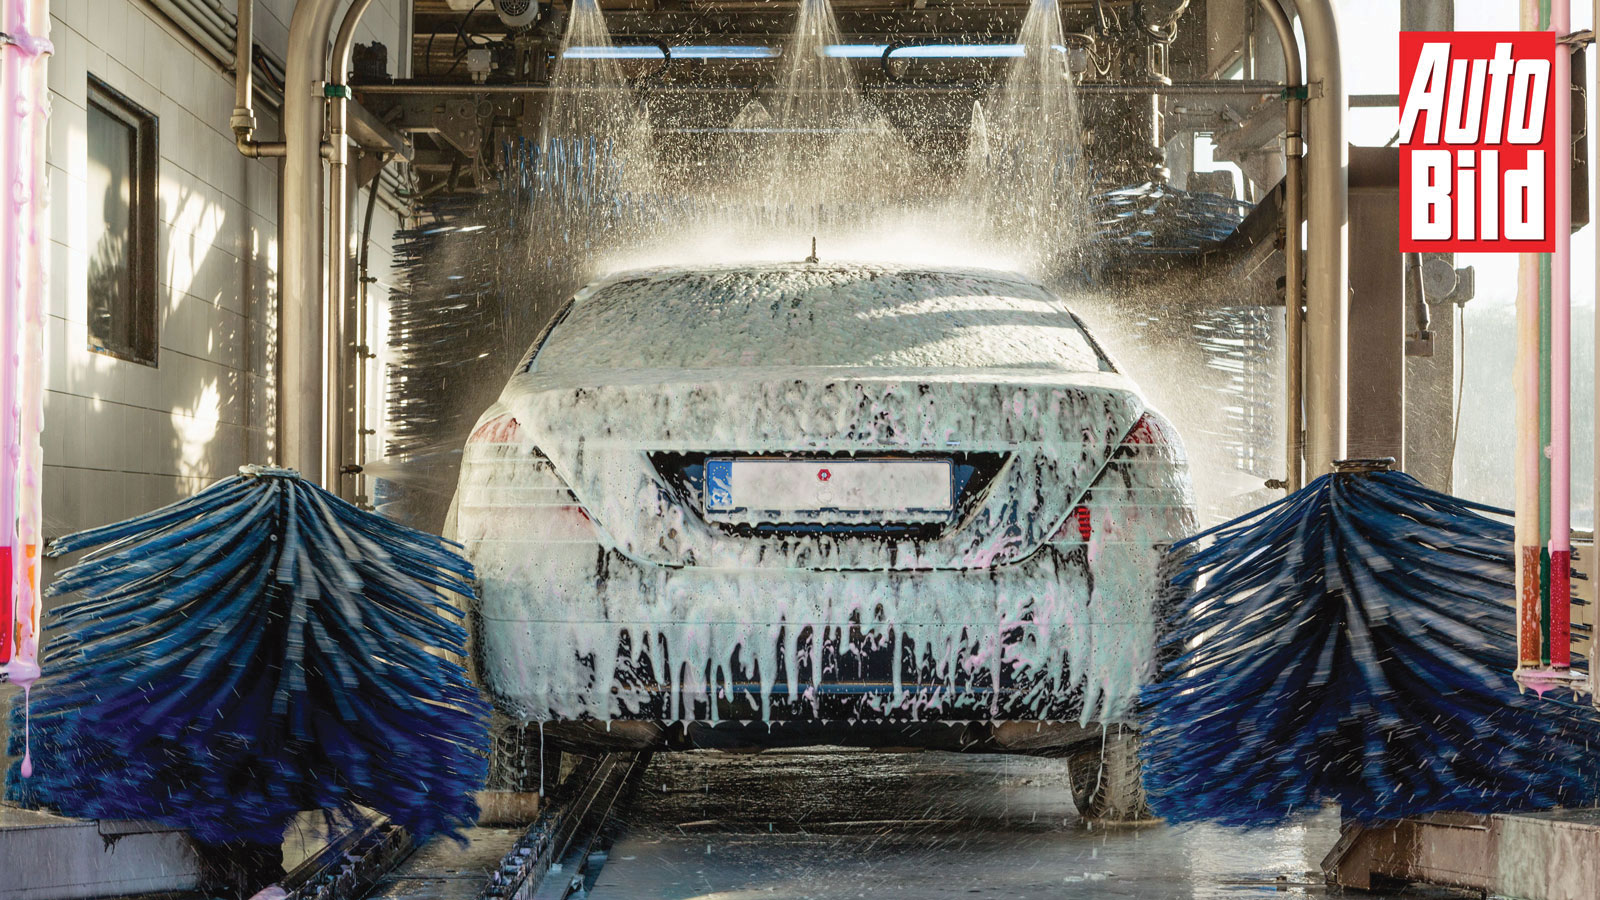 Γιατί είναι σημαντικό το πλύσιμο του αυτοκινήτου το χειμώνα;